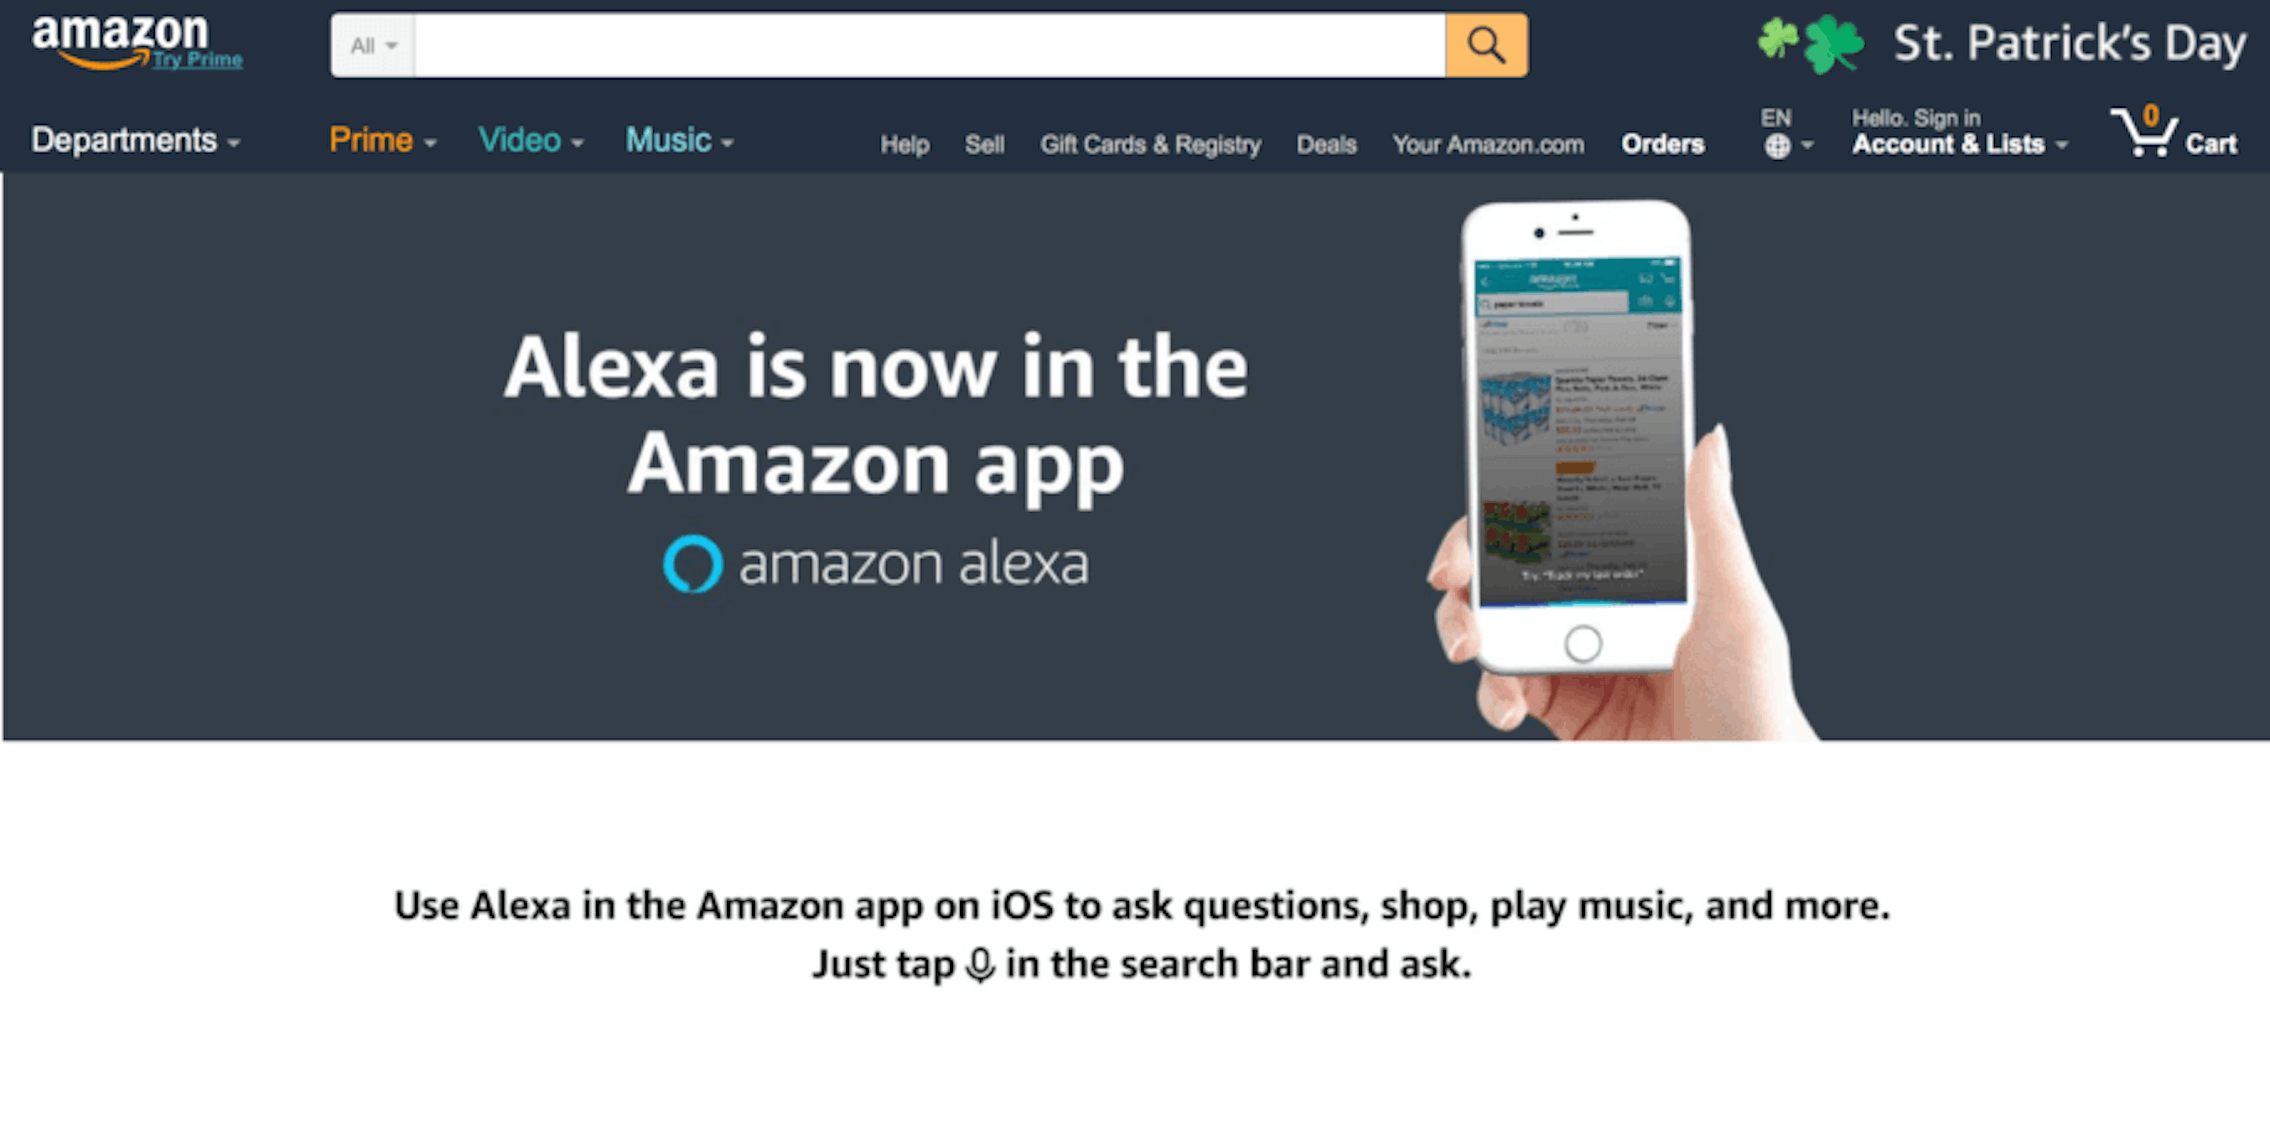 Amazon's Alexa Comes to iPhones with Amazon App Update